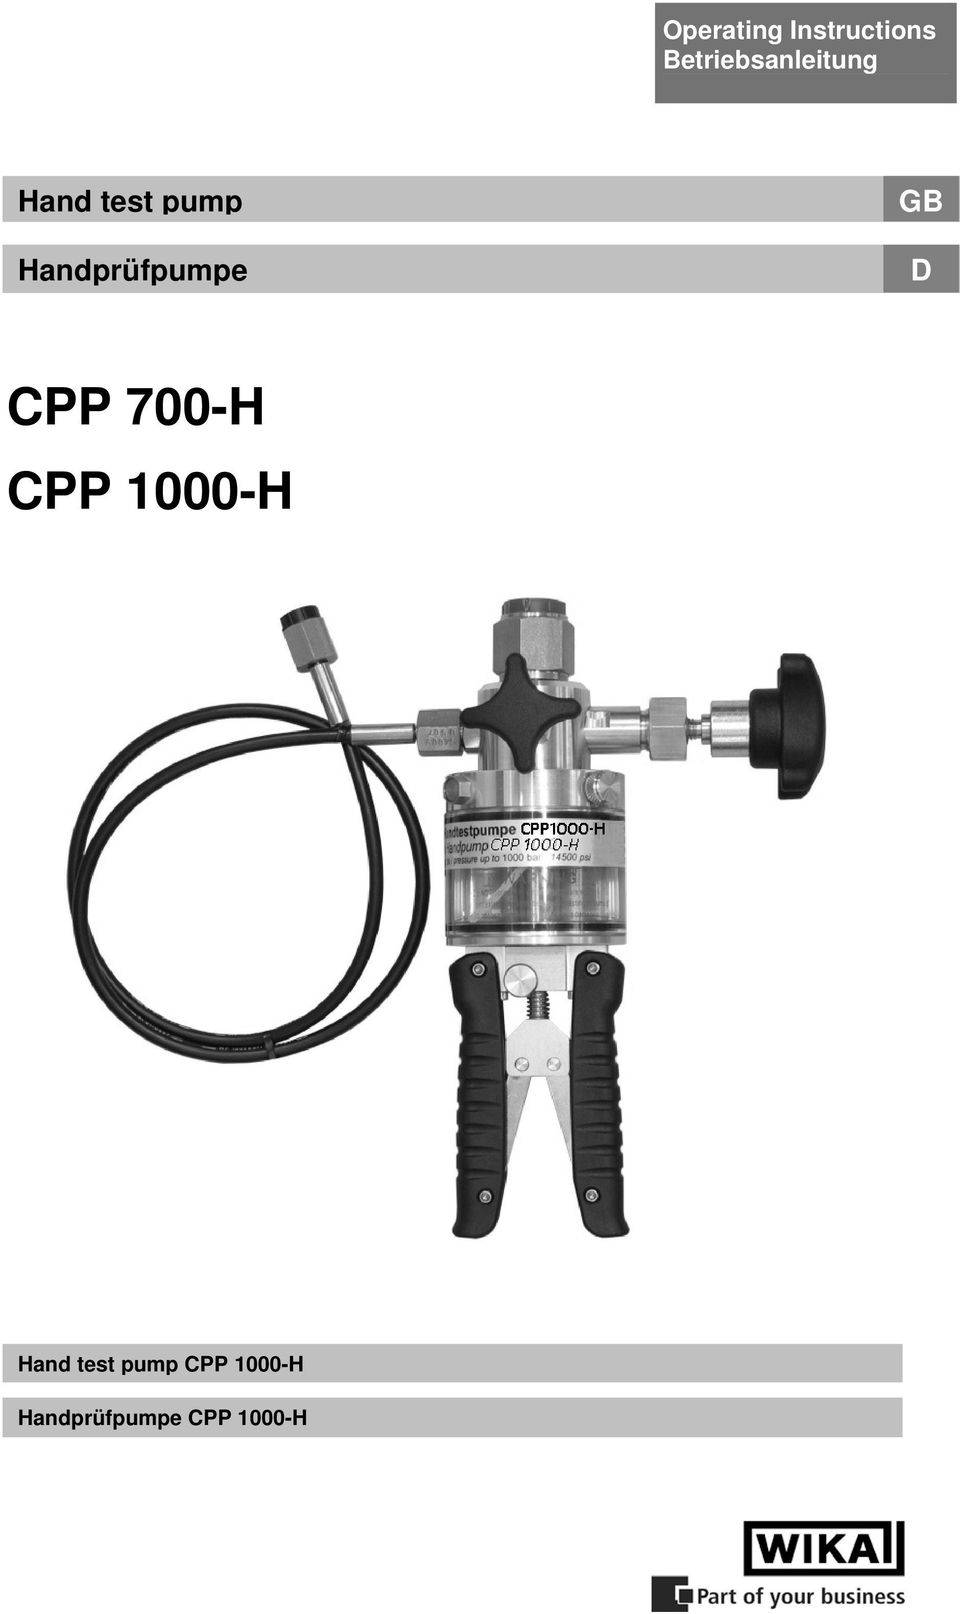 Handprüfpumpe GB CPP 700-H CPP